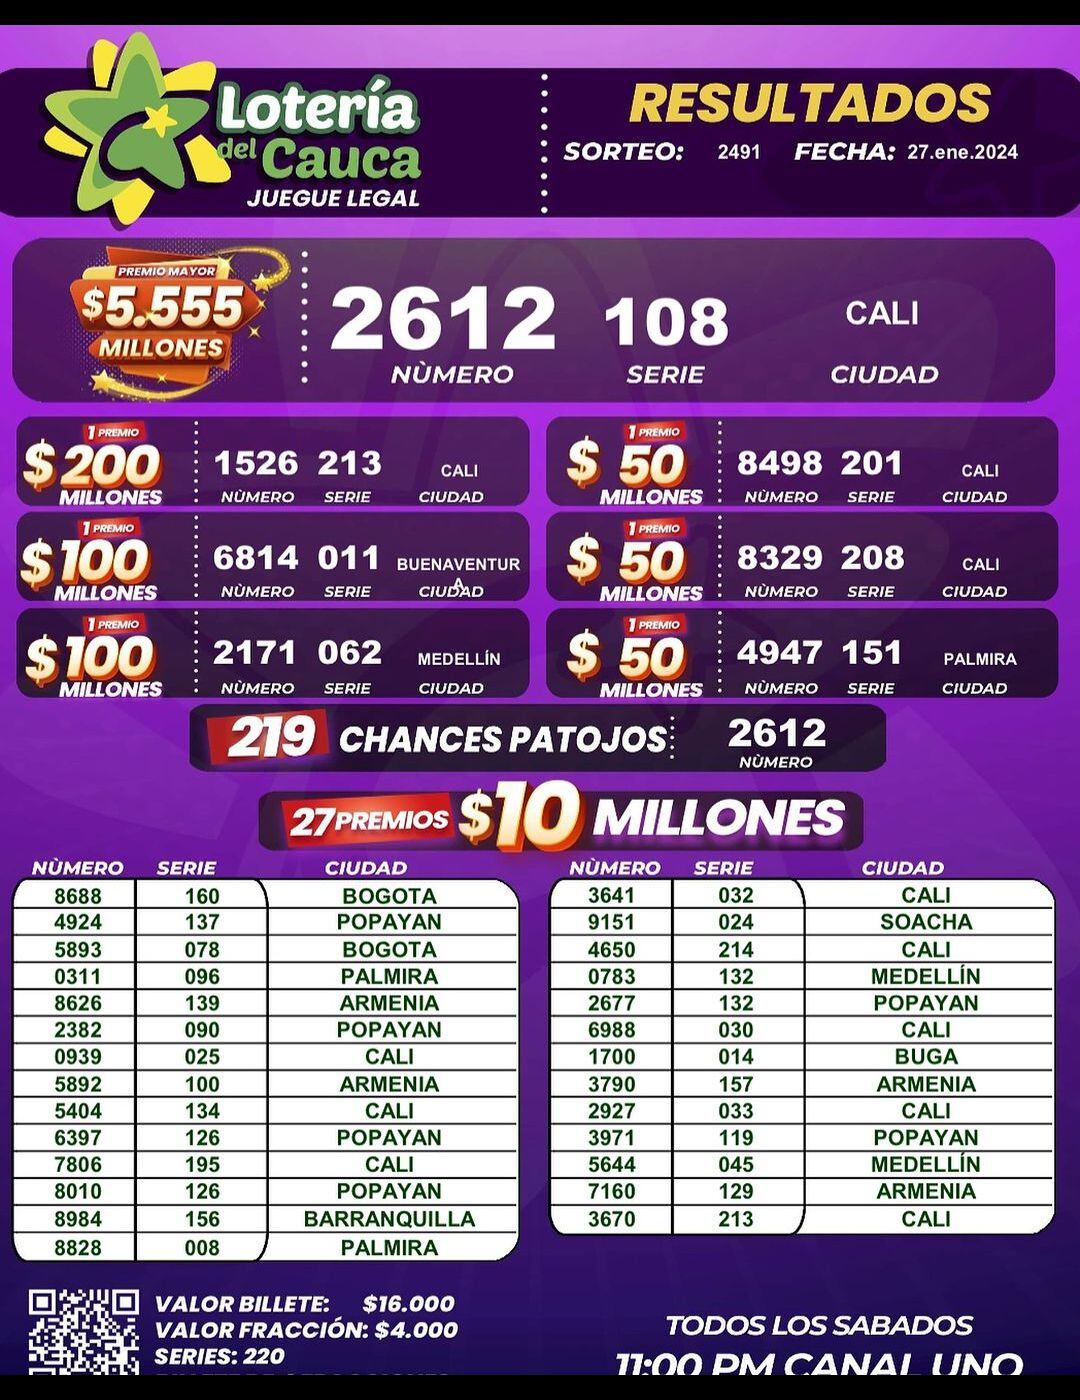 Resultados completos de la Lotería del Cauca del sábado 27 de enero de 2024.